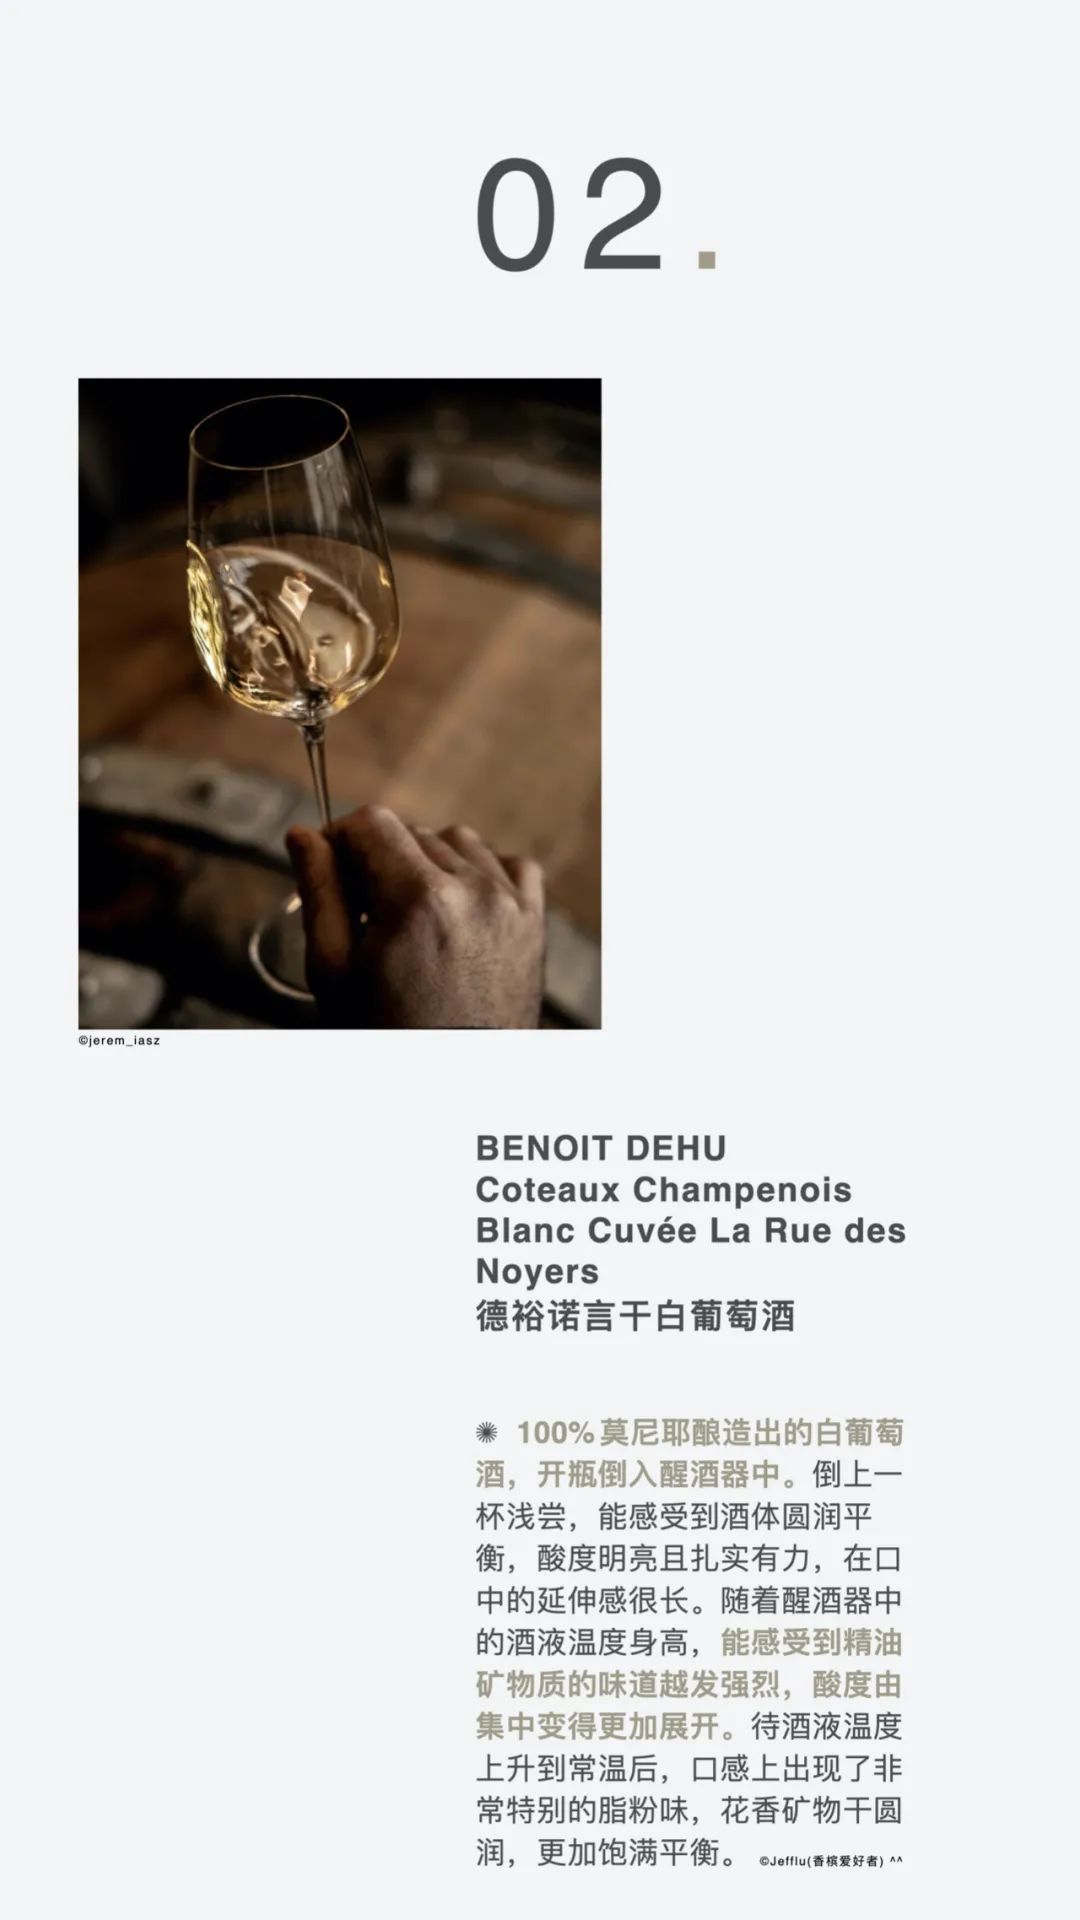 限量发售 ｜ Coteaux Champenois 香槟区静态酒套装